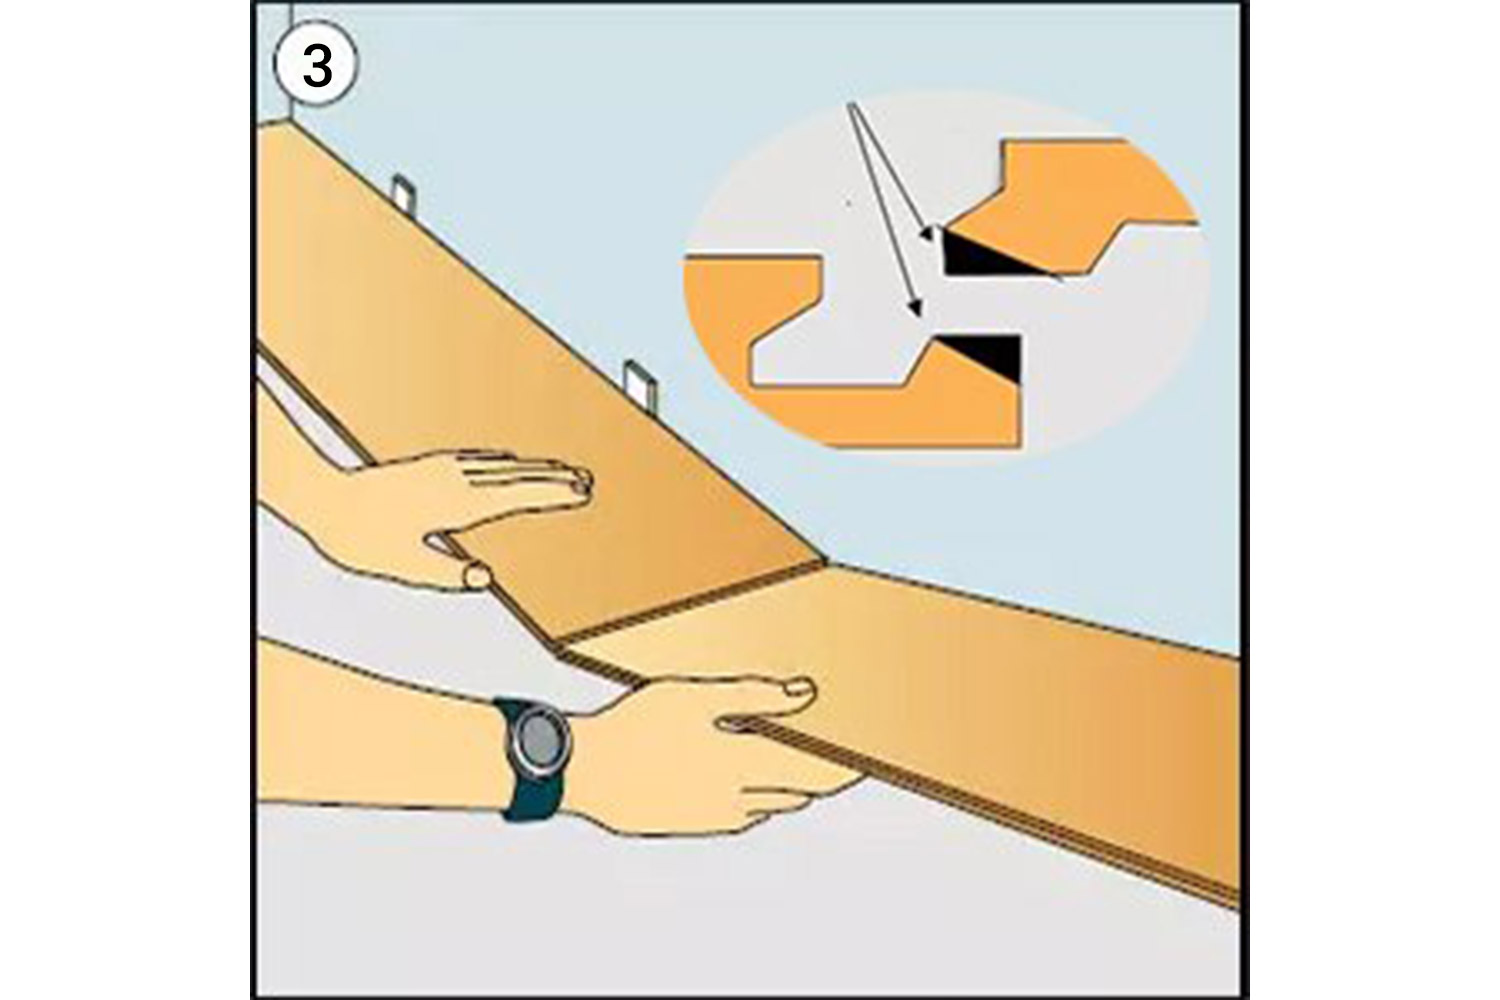 Bước 3: hướng dẫn lắp đặt sàn nhựa spc hèm khóa | hướng dẫn lắp đặt sàn nhựa giả gỗ